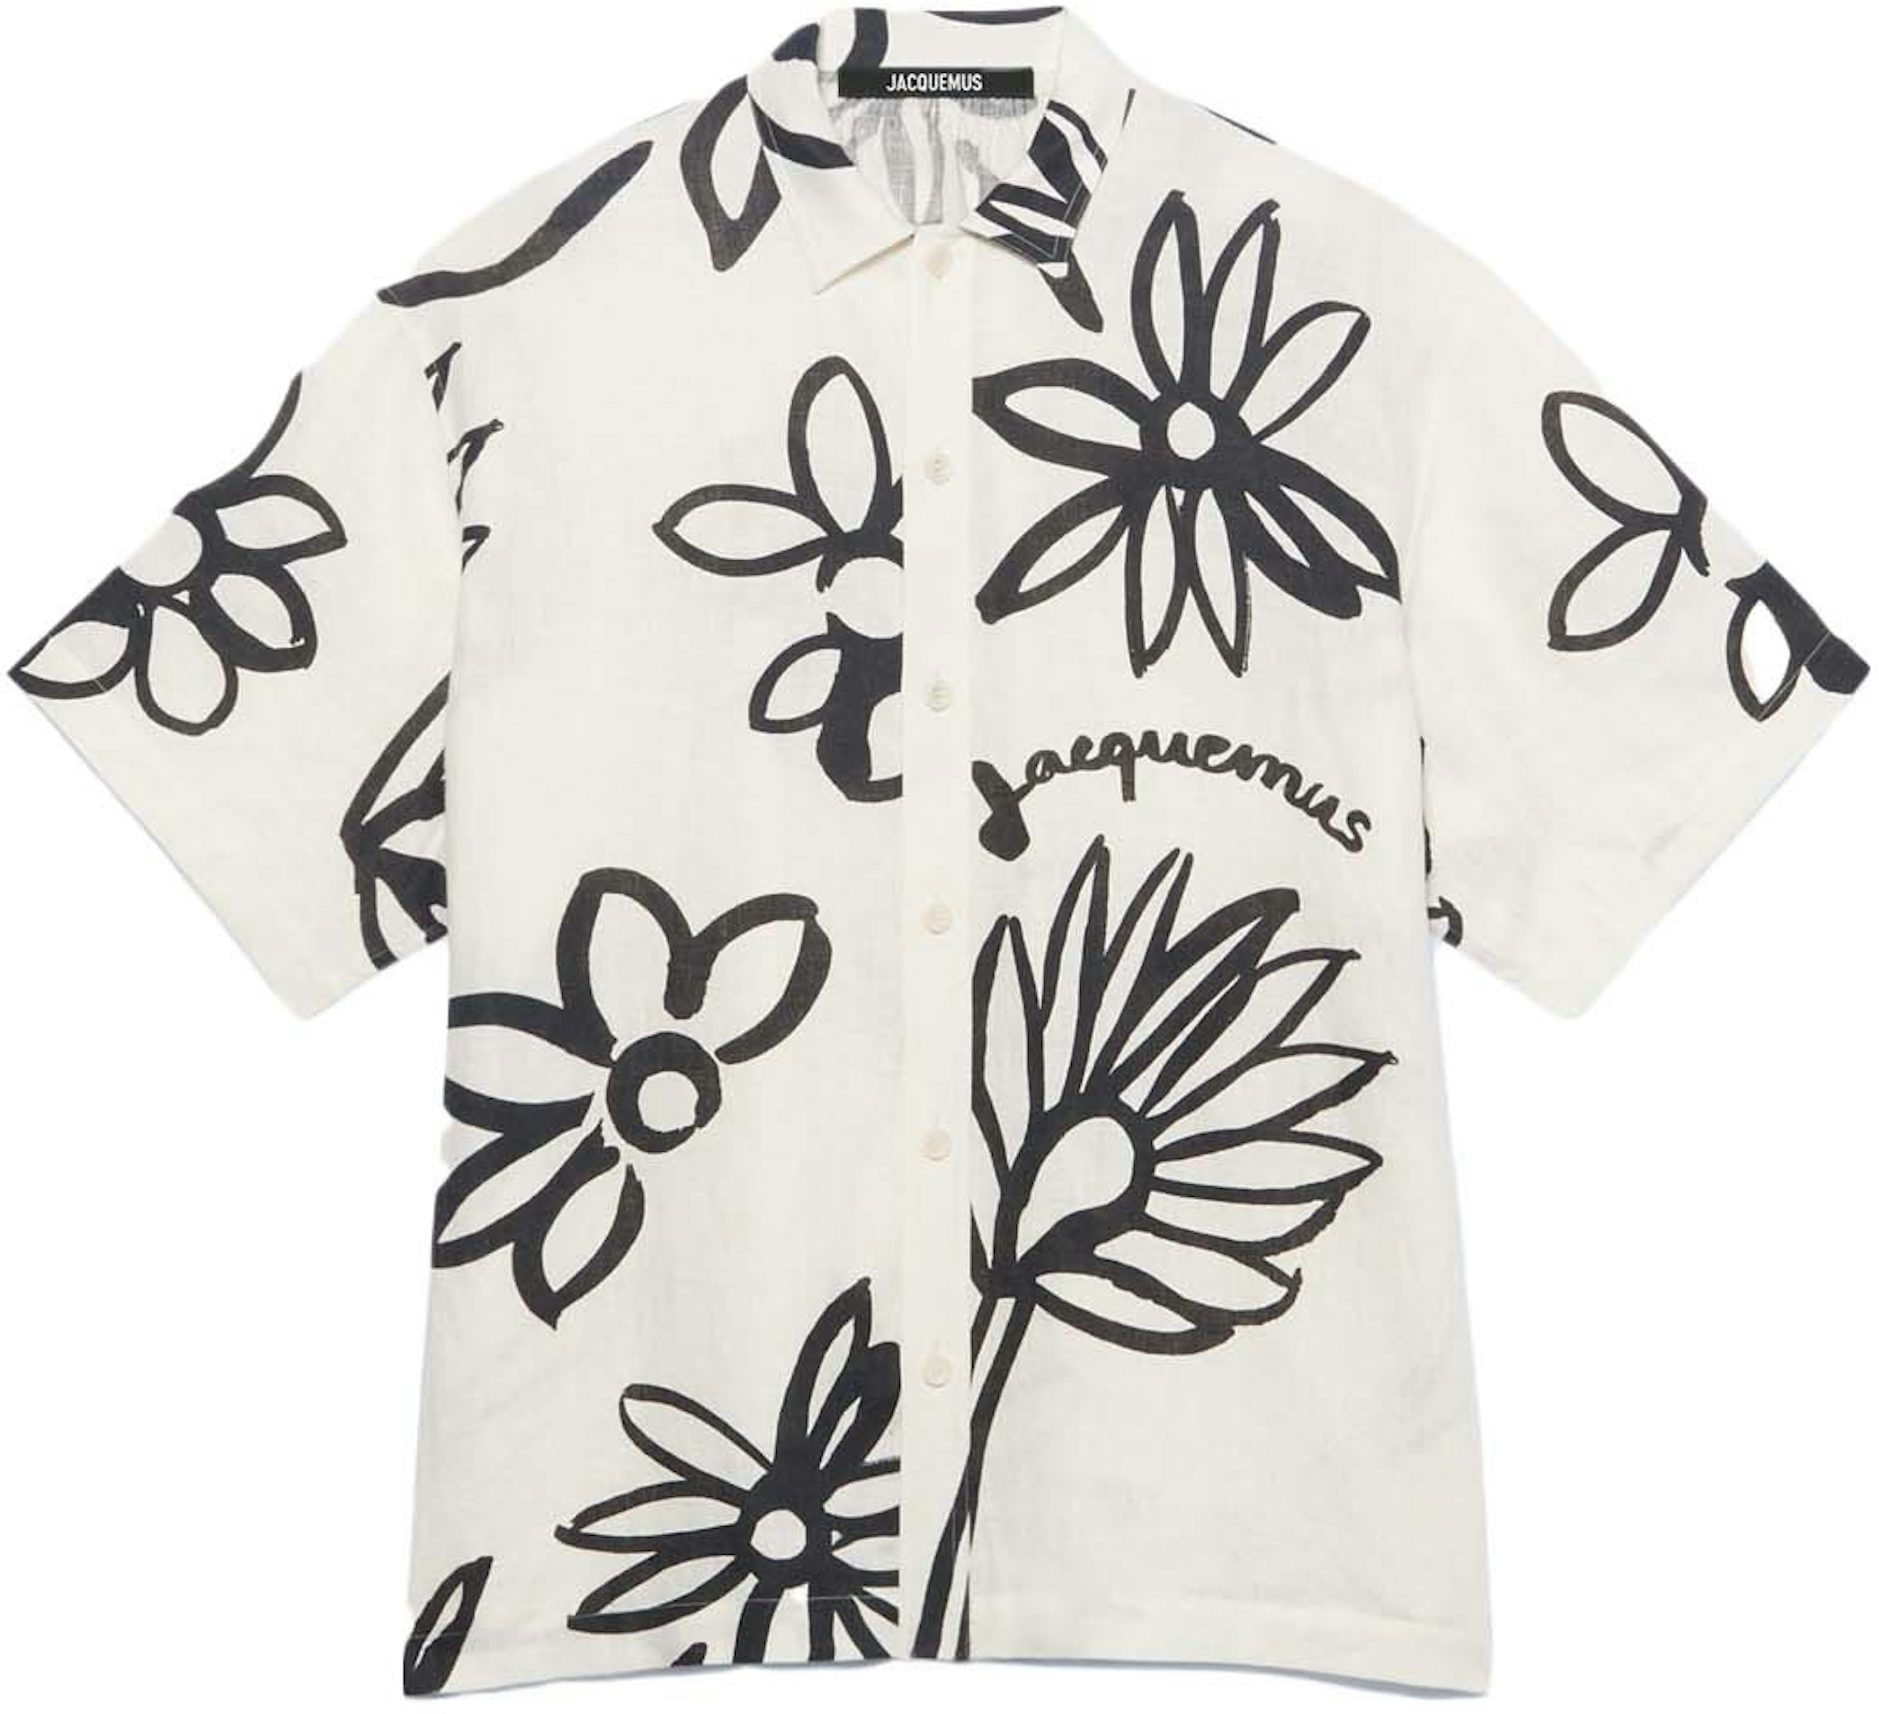 Jacquemus La Moisson Flower Sketch Short Sleeved Shirt Print Black/White Flowers - SS22 Men's - US